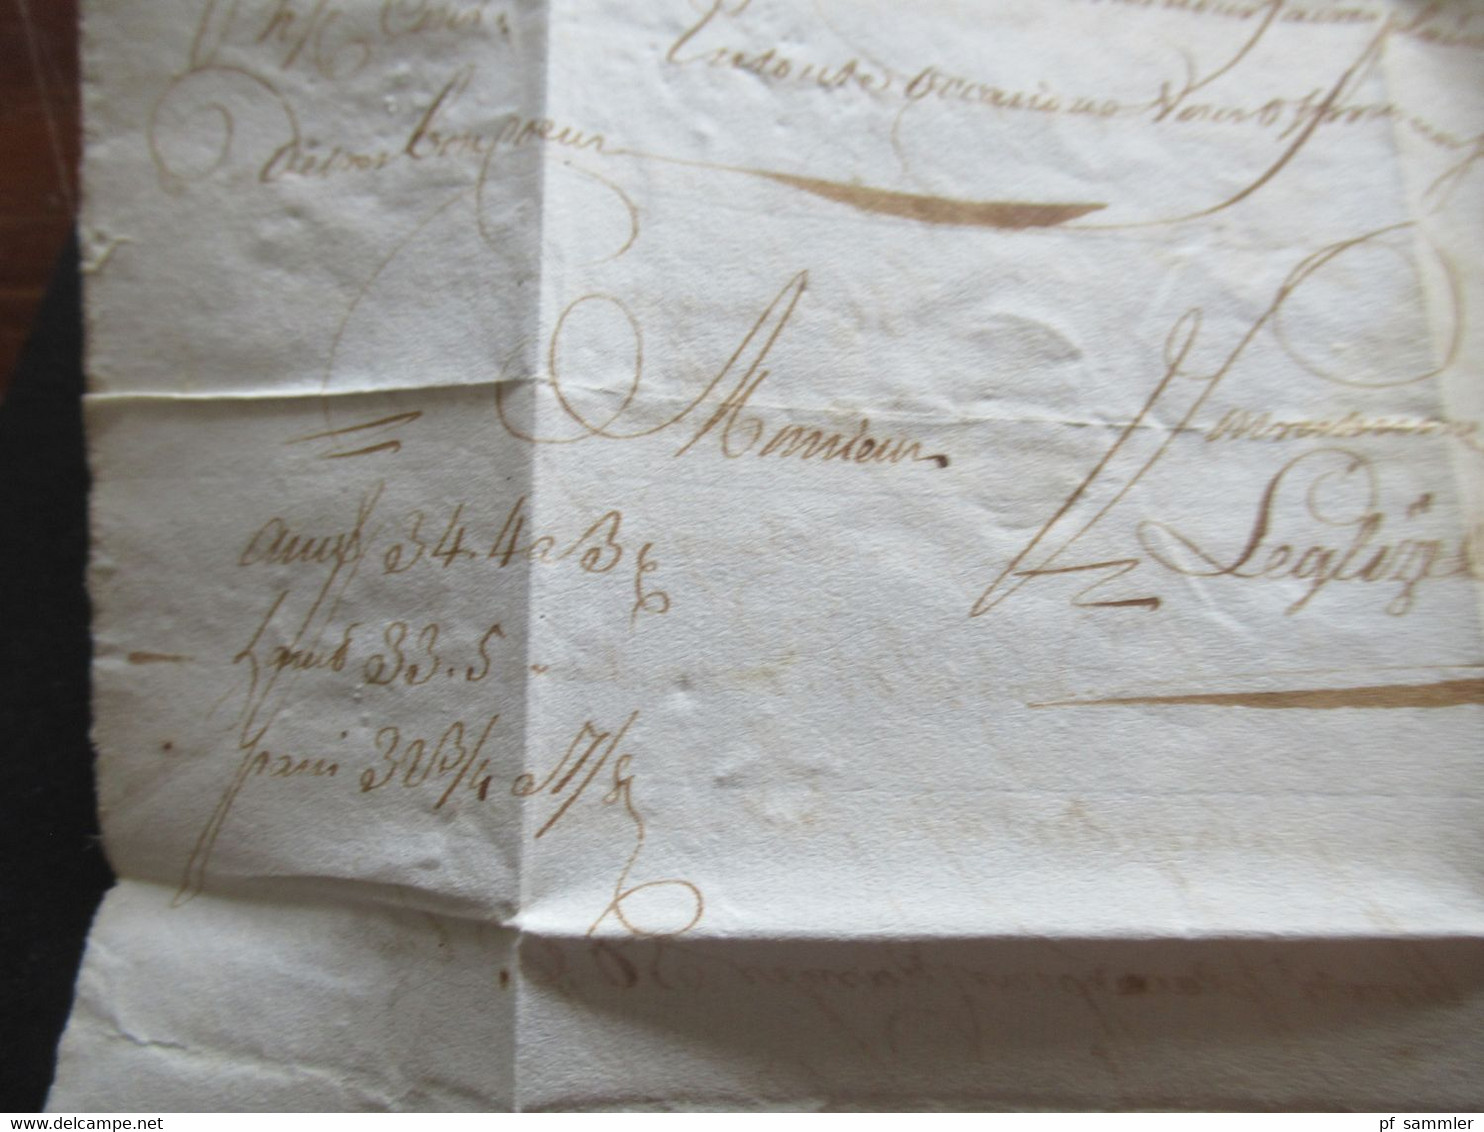 Frankreich 1729 Paris Faltbrief mit Inhalt und Schnörkel Unterschrift / Autograph schwarzer Stempel L1